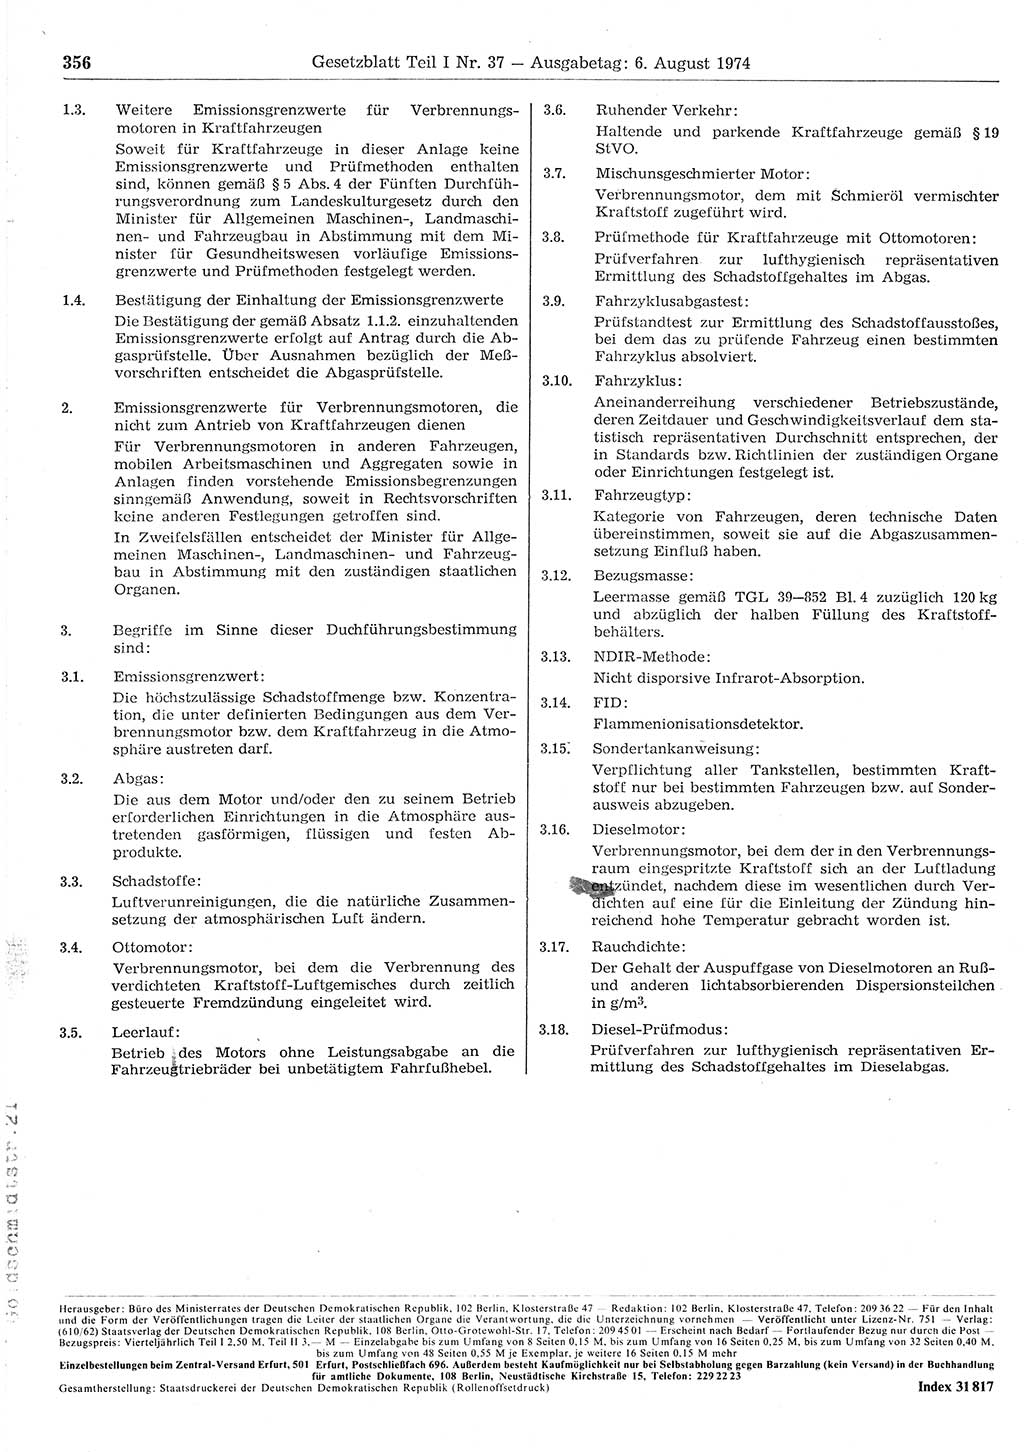 Gesetzblatt (GBl.) der Deutschen Demokratischen Republik (DDR) Teil Ⅰ 1974, Seite 356 (GBl. DDR Ⅰ 1974, S. 356)